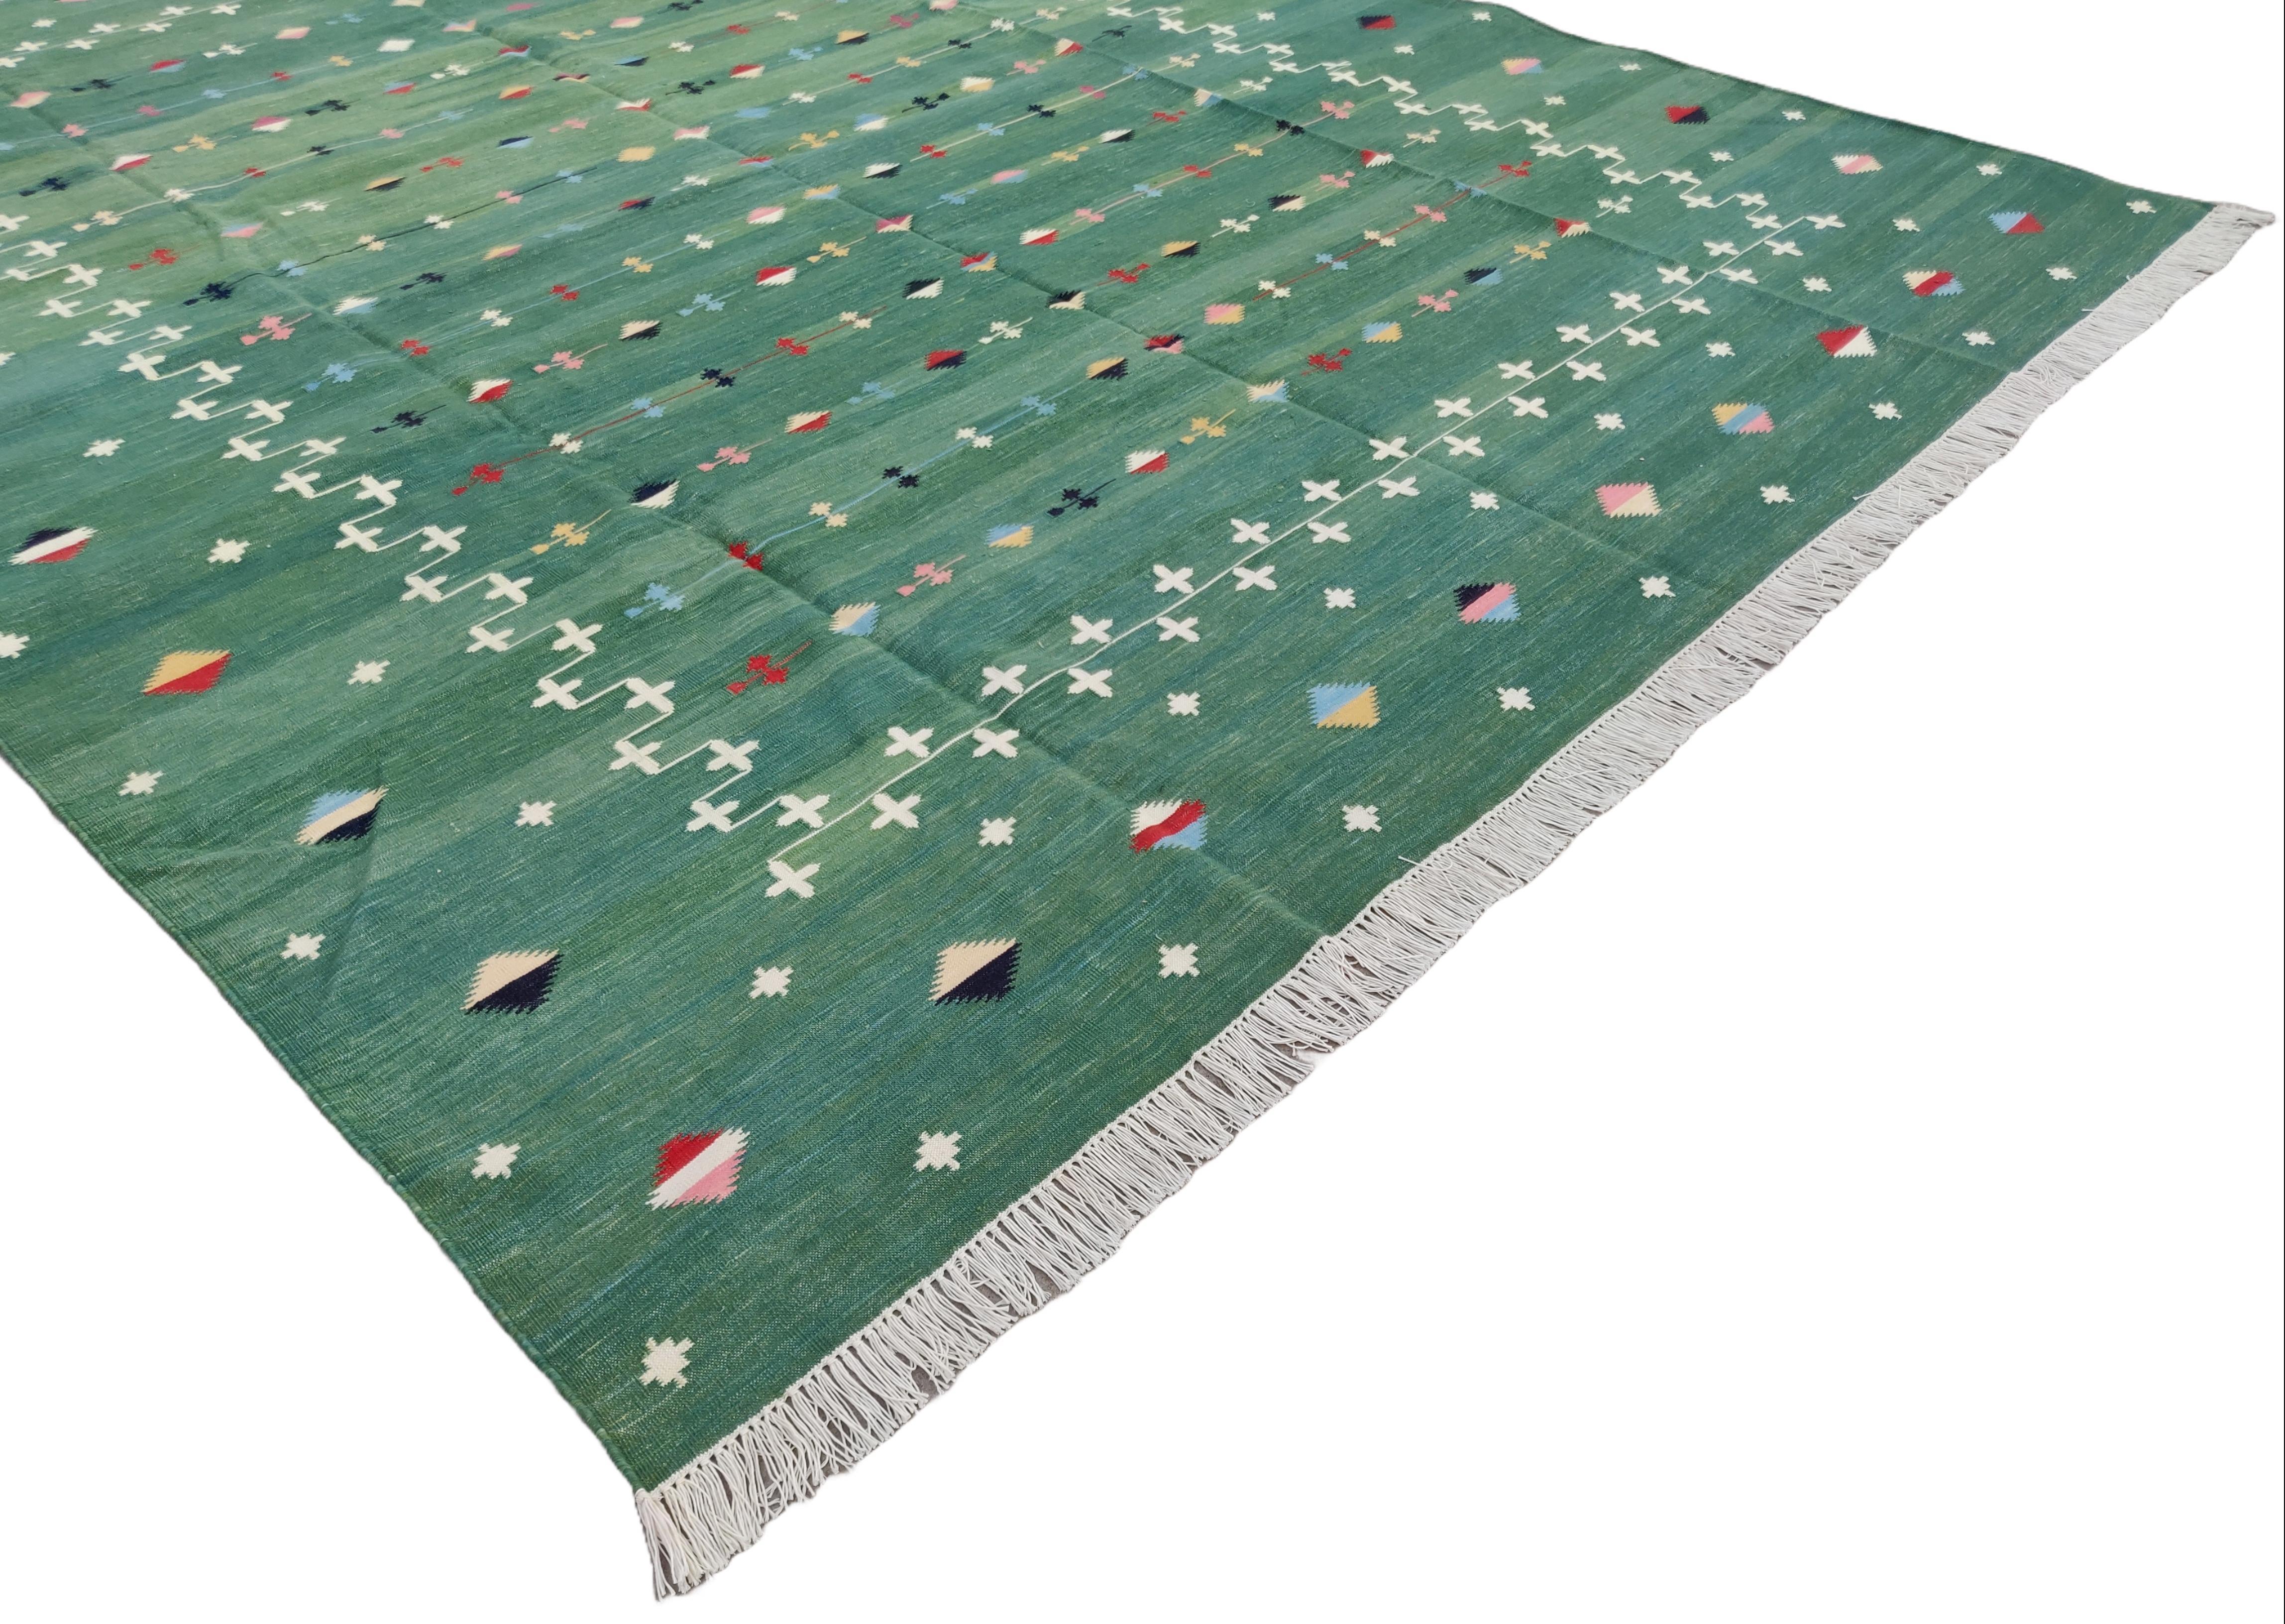 Baumwolle pflanzlich gefärbt Waldgrün Shooting Star Teppich-8'x10'
Diese speziellen flachgewebten Dhurries werden aus 15-fachem Garn aus 100% Baumwolle handgewebt. Aufgrund der speziellen Fertigungstechniken, die zur Herstellung unserer Teppiche